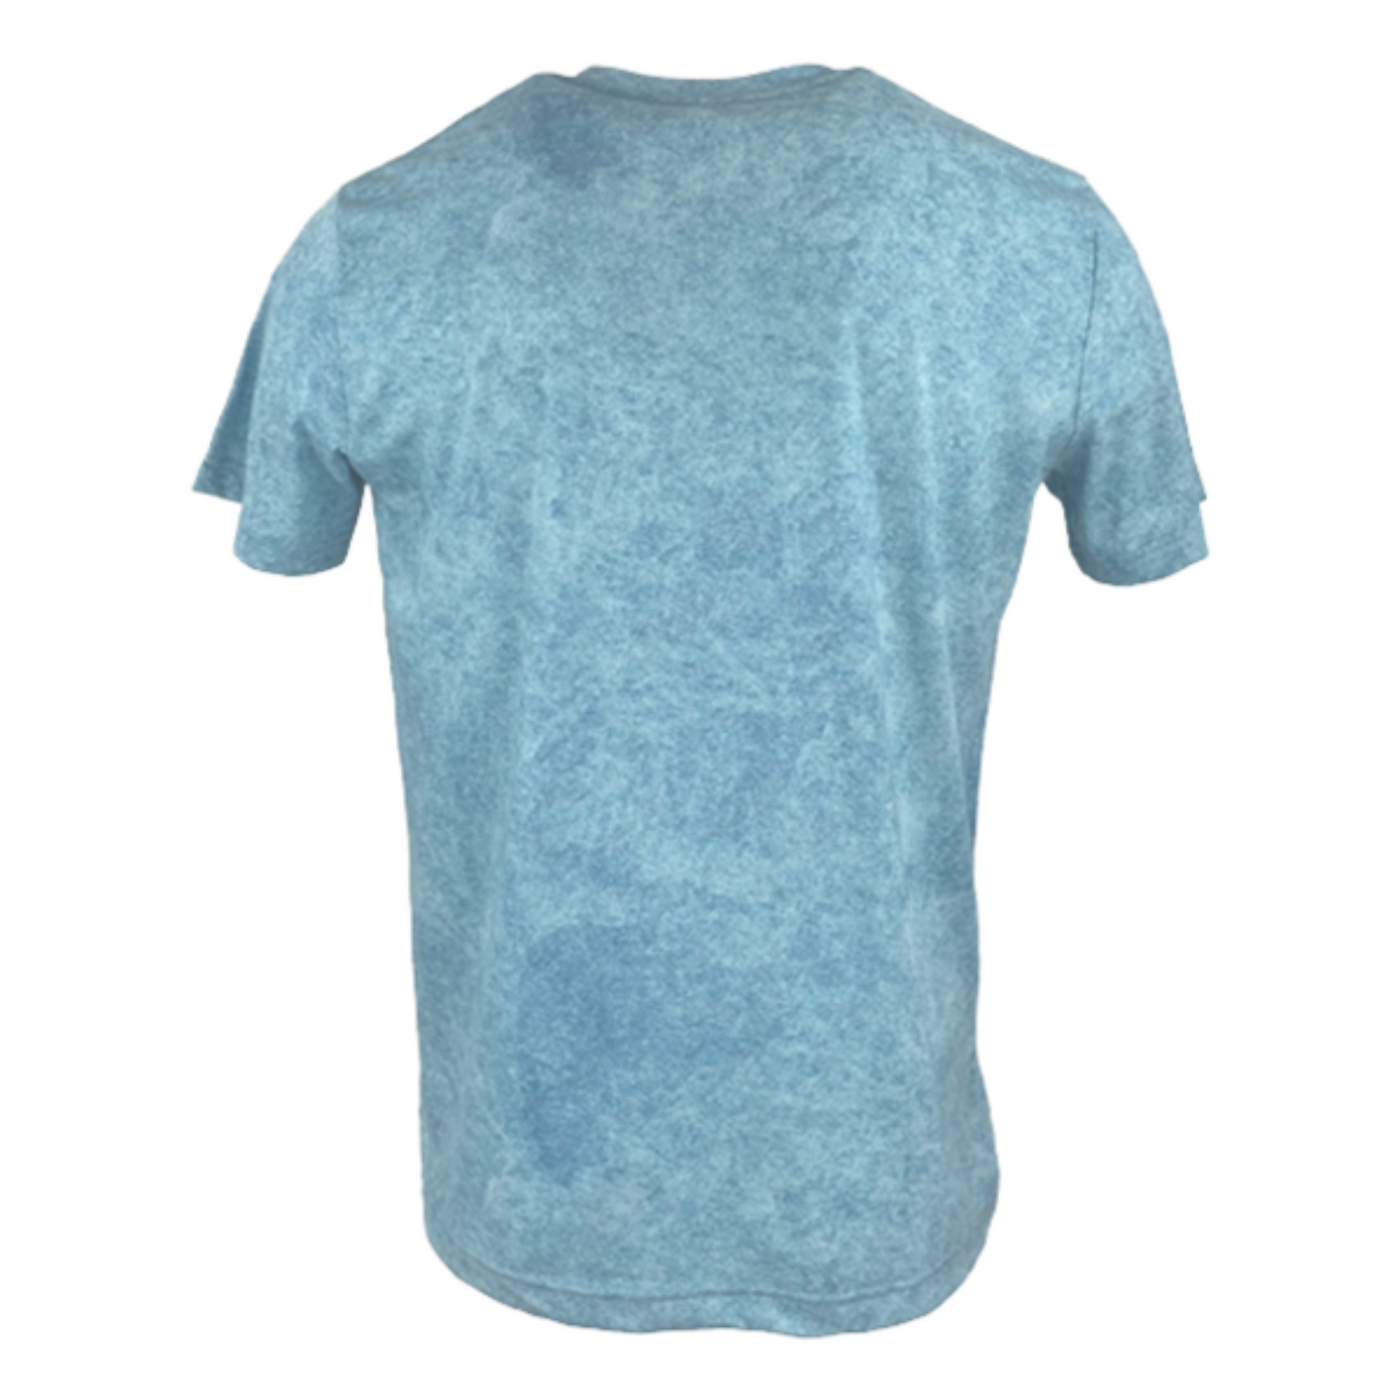 Belles - Logo Shirt - Vintage Blue